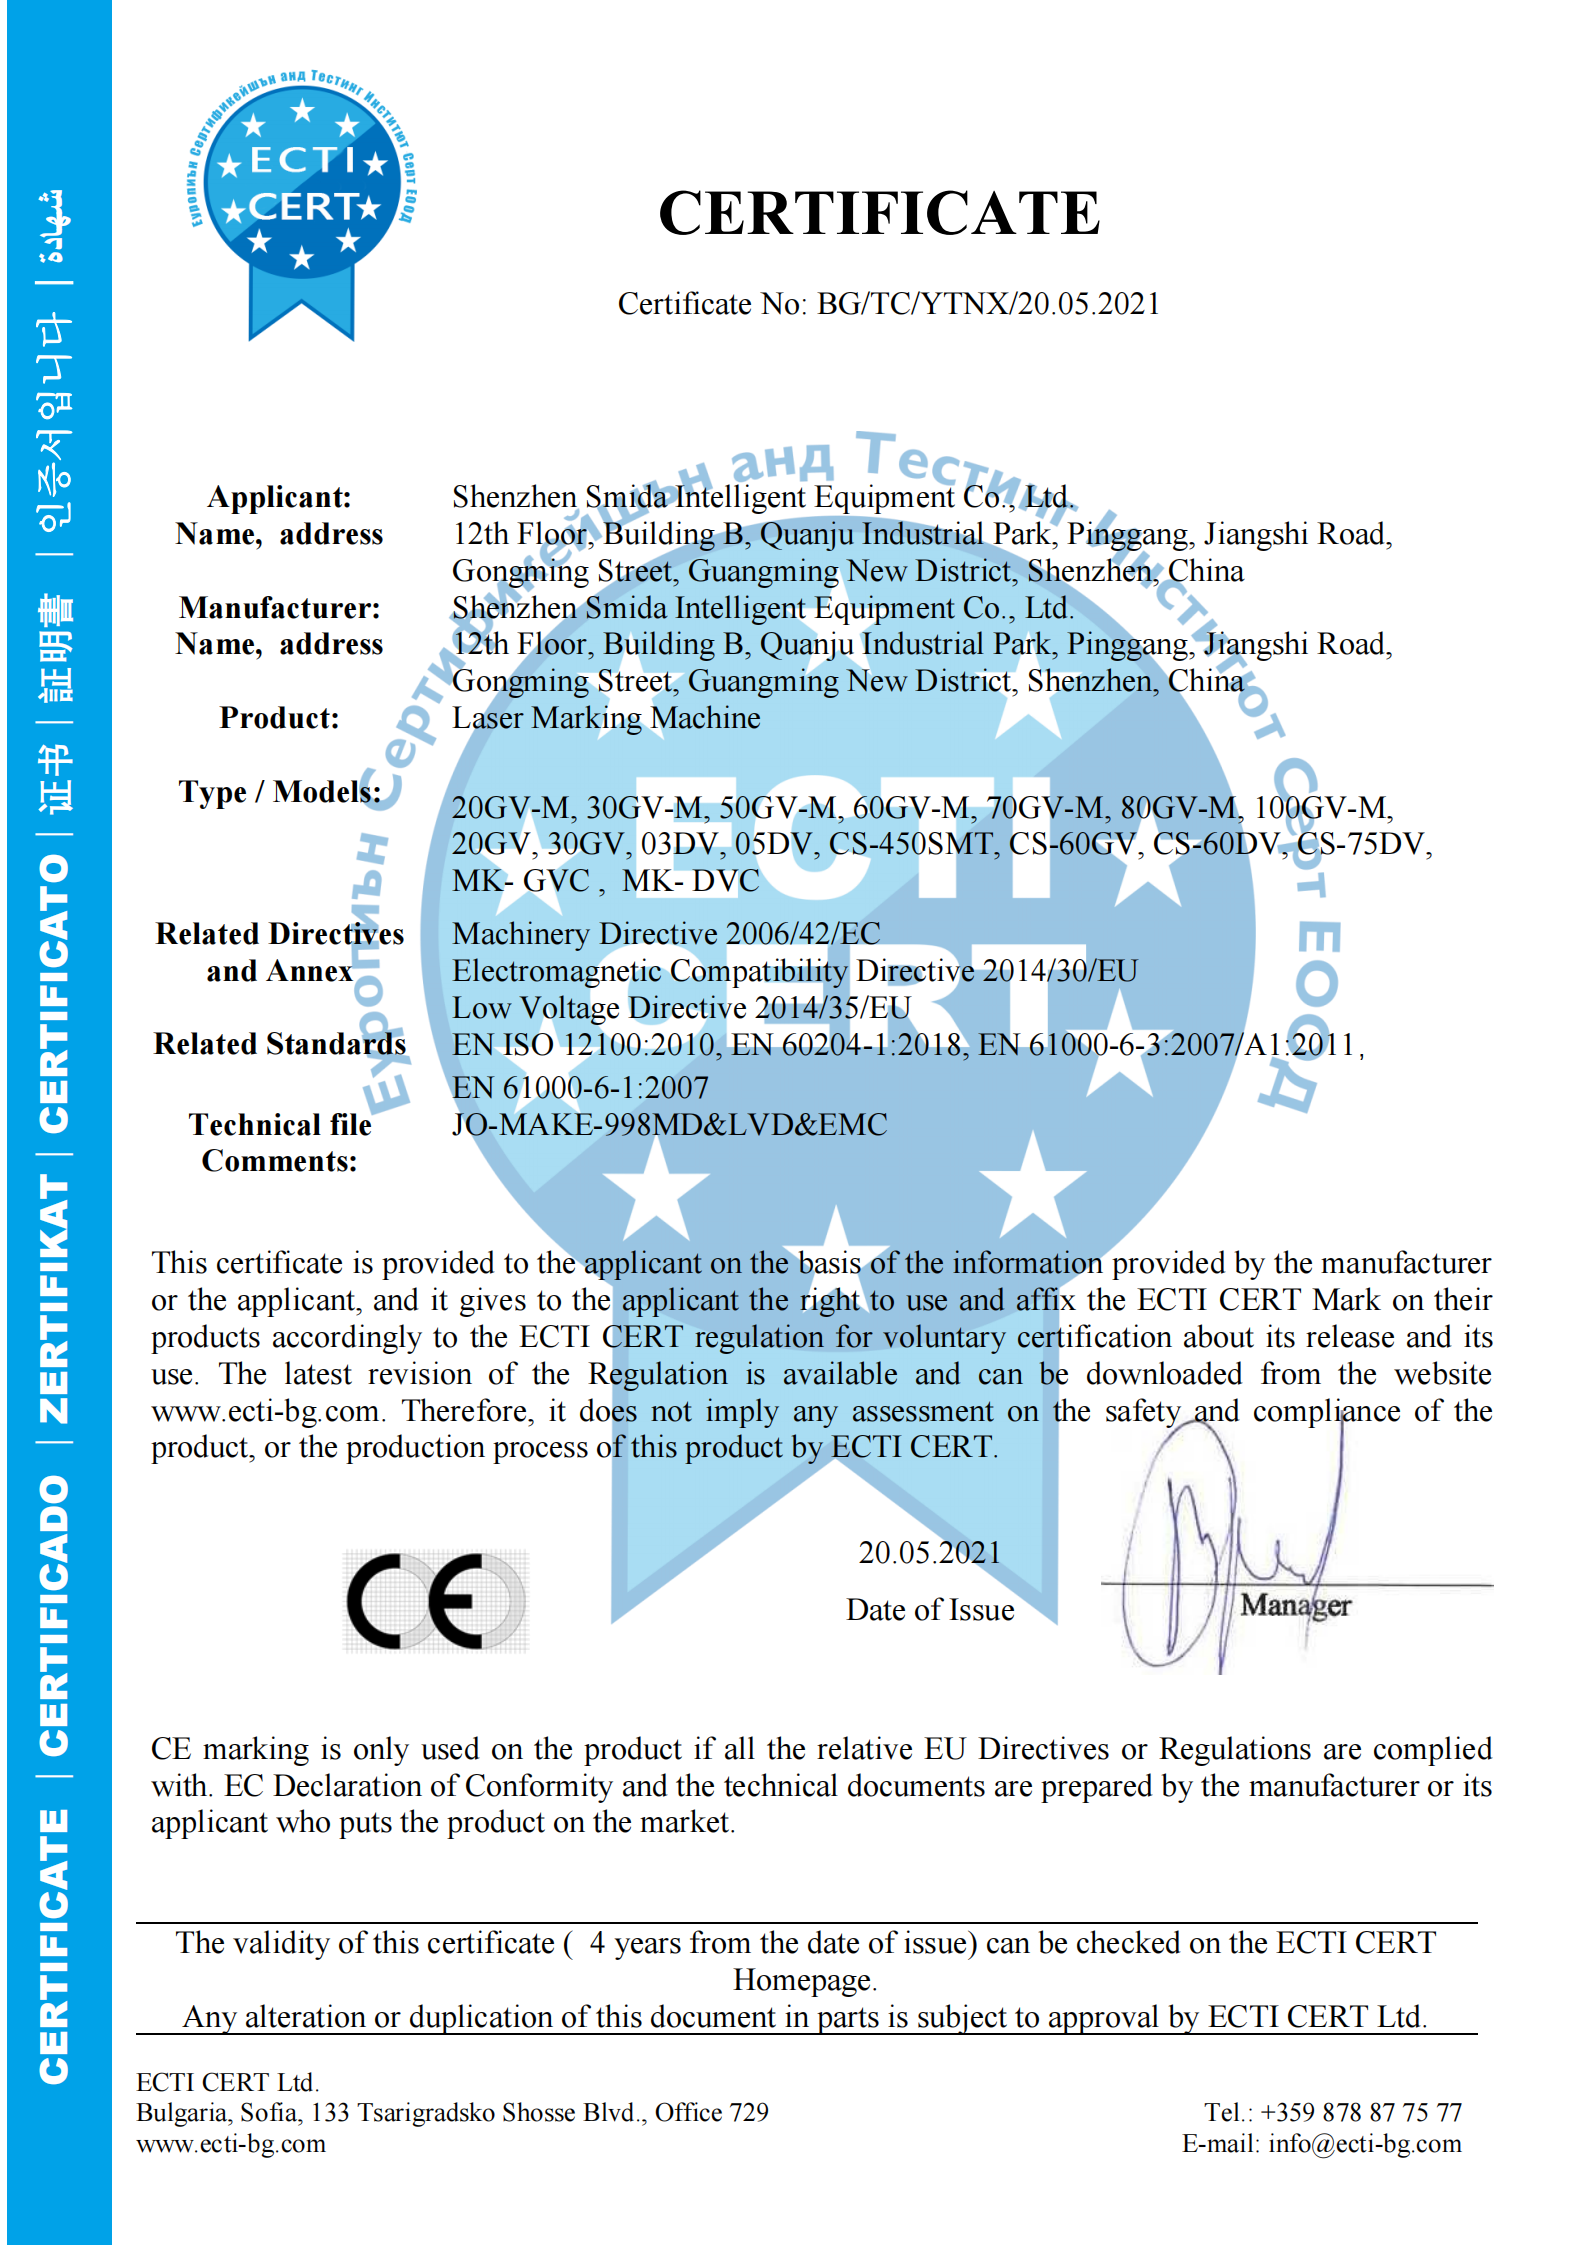 Ajout de la certification CE pour la machine de marquage laser